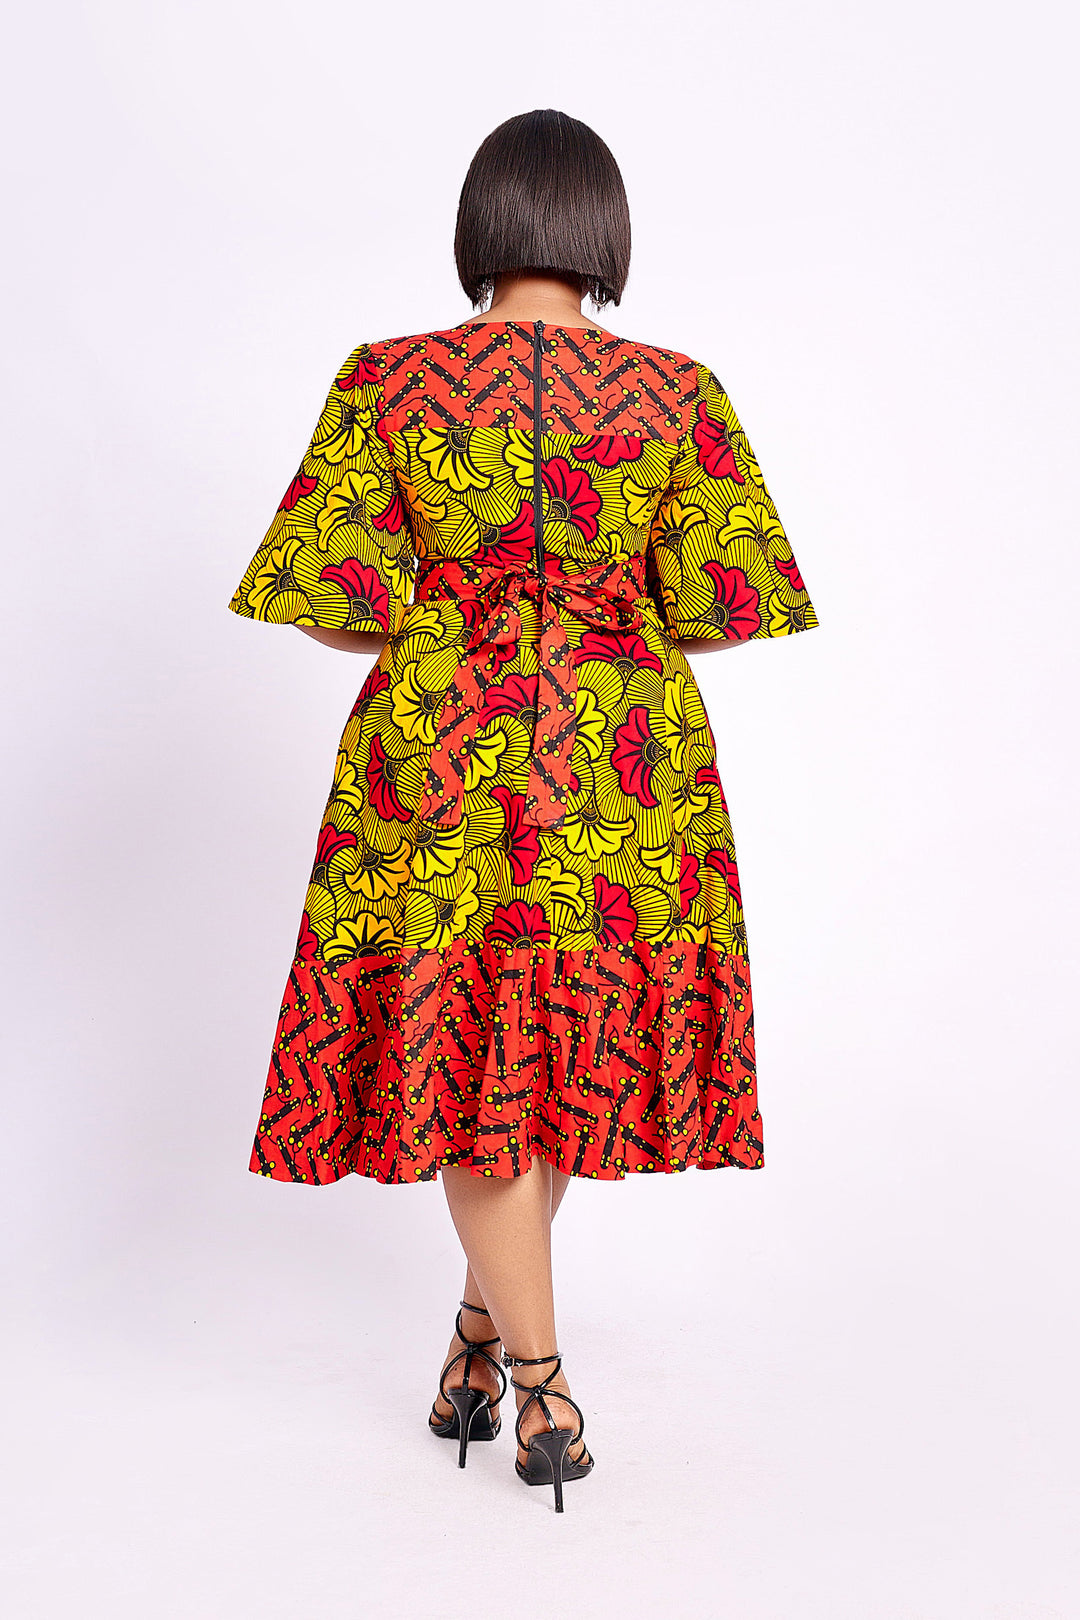  Africal Clothing